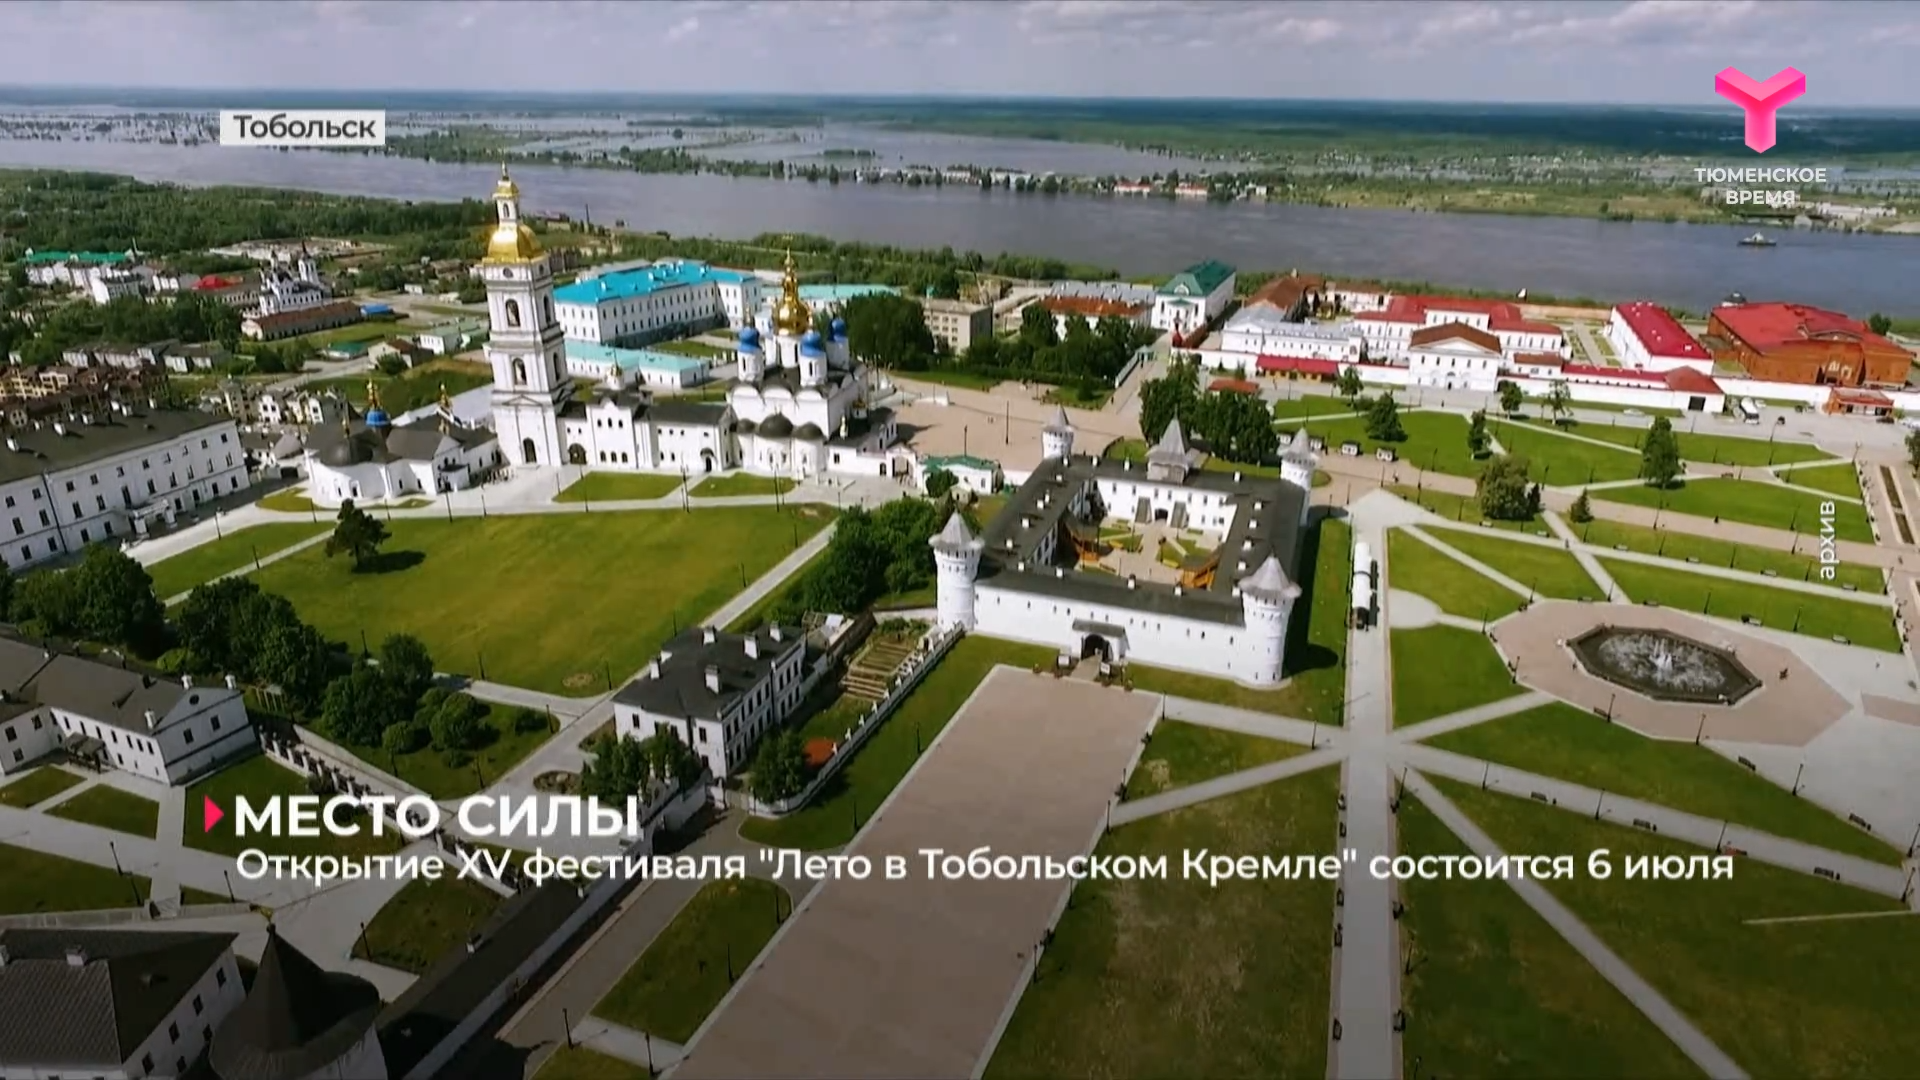 Открытие XV фестиваля "Лето в Тобольском Кремле" состоится 6 июля